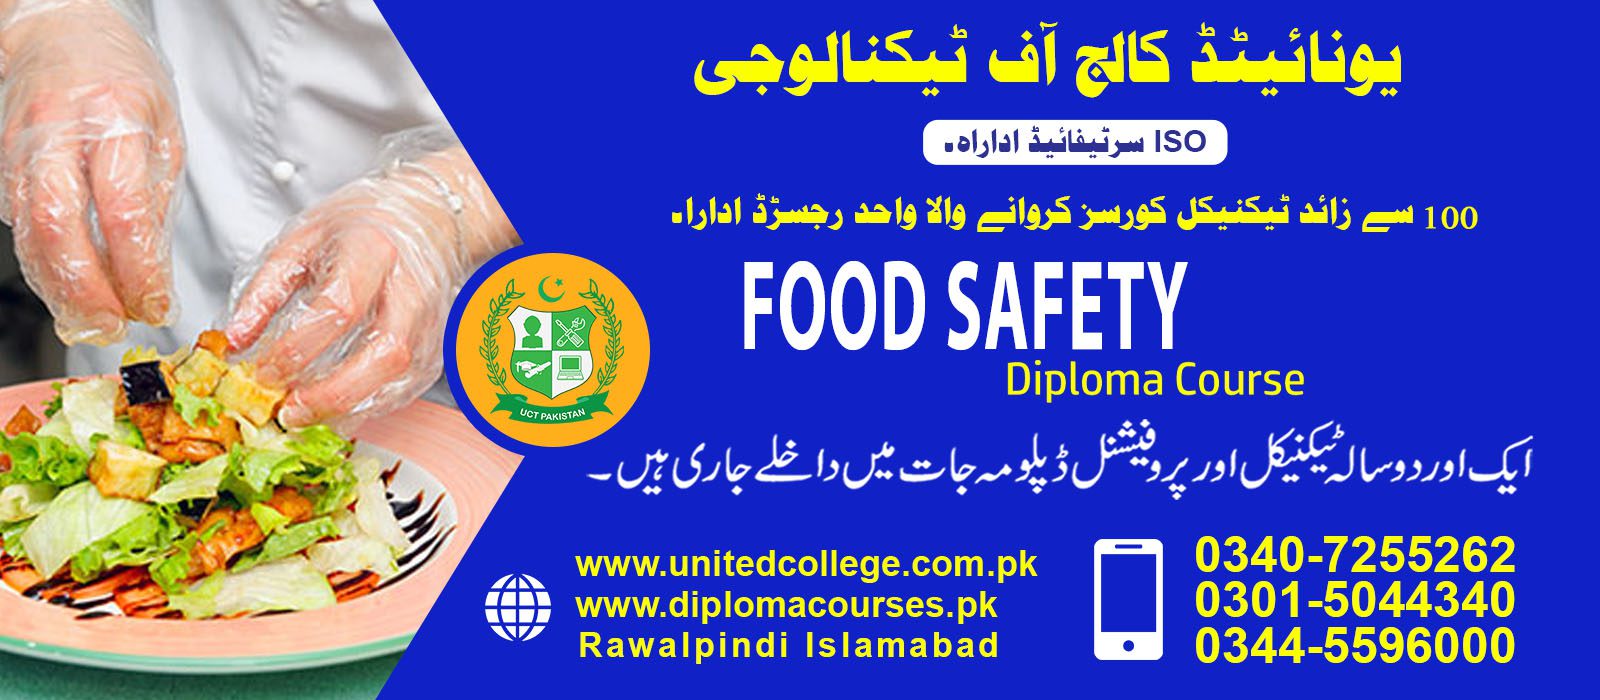 FOOD SAFETY COURSE IN RAWALPINDI ISLAMABAD pakistan